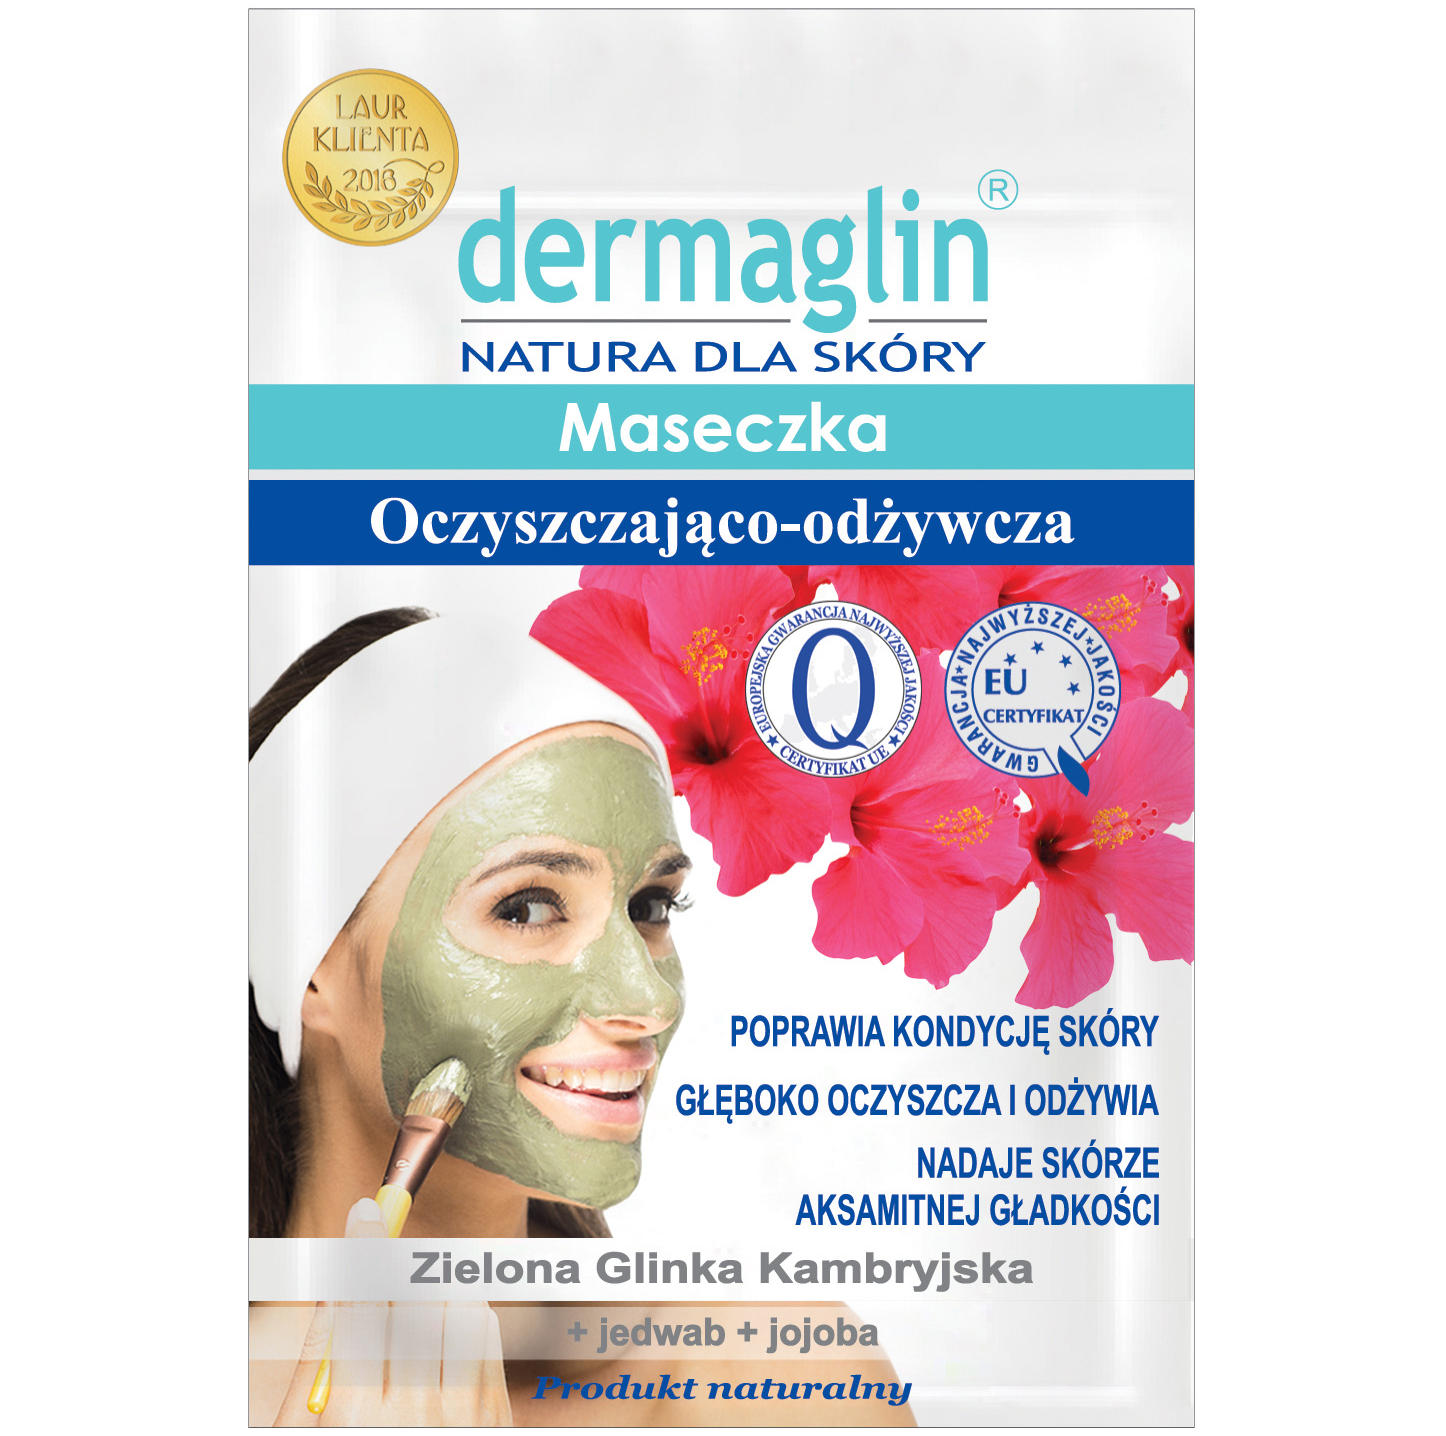 Dermaglin очищающая и питательная маска для лица, 20 г